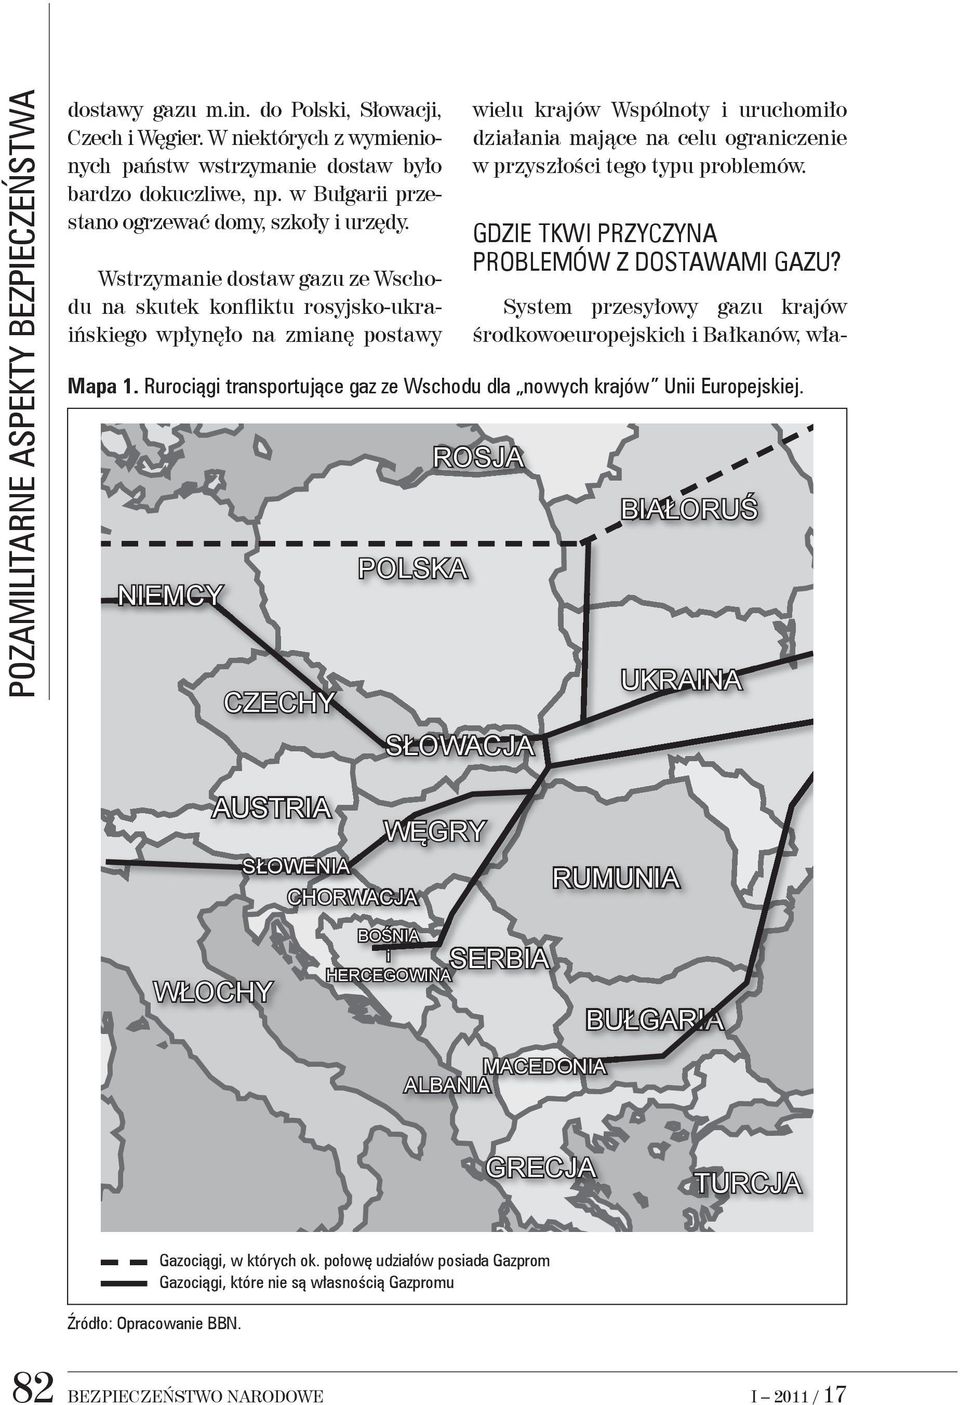 Wstrzymanie dostaw gazu ze Wschodu na skutek konfliktu rosyjsko-ukraińskiego wpłynęło na zmianę postawy System przesyłowy gazu krajów środkowoeuropejskich i Bałkanów, wła- Mapa 1.